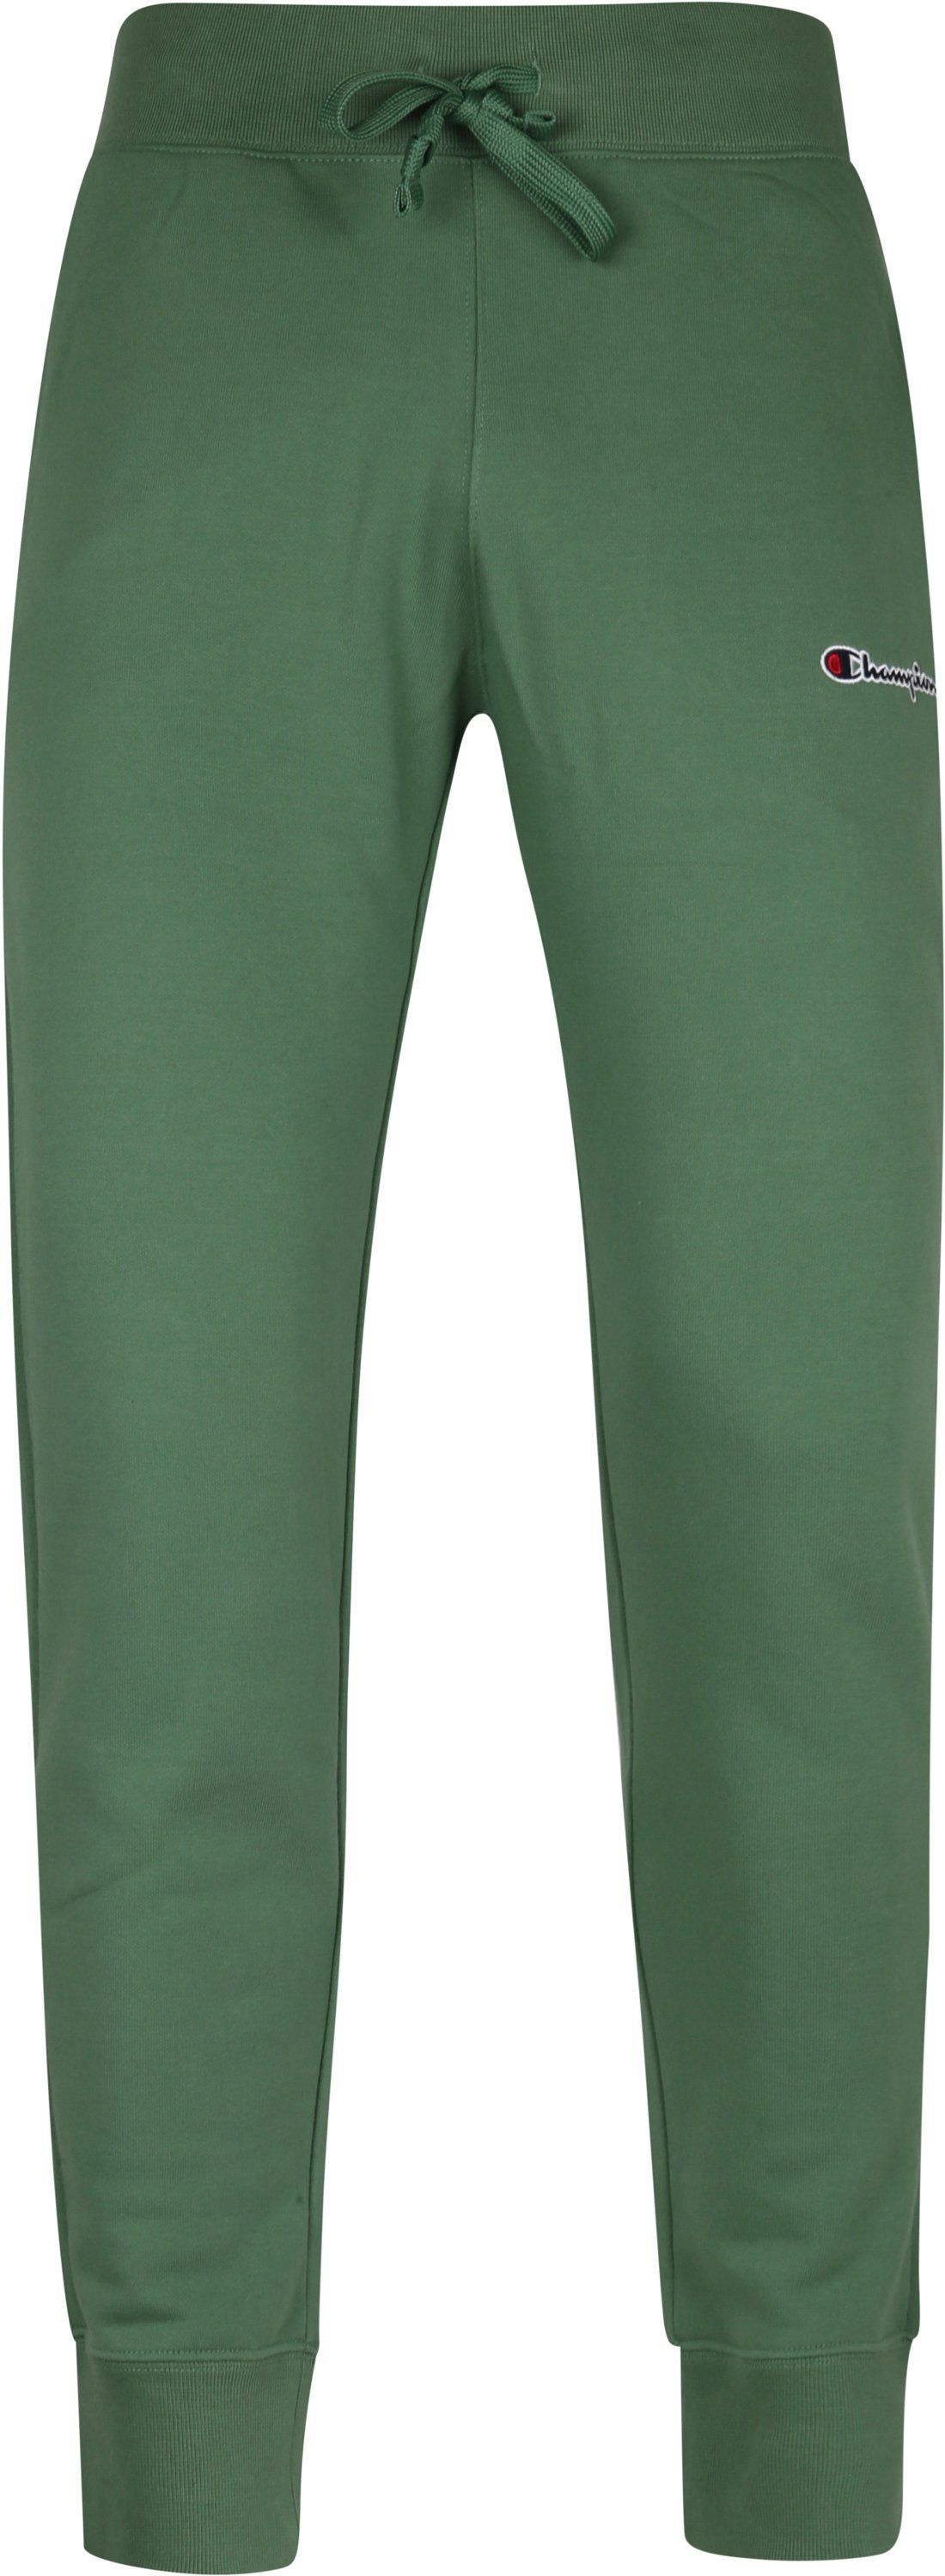 Champion Sweatpants Green Dark Green size L